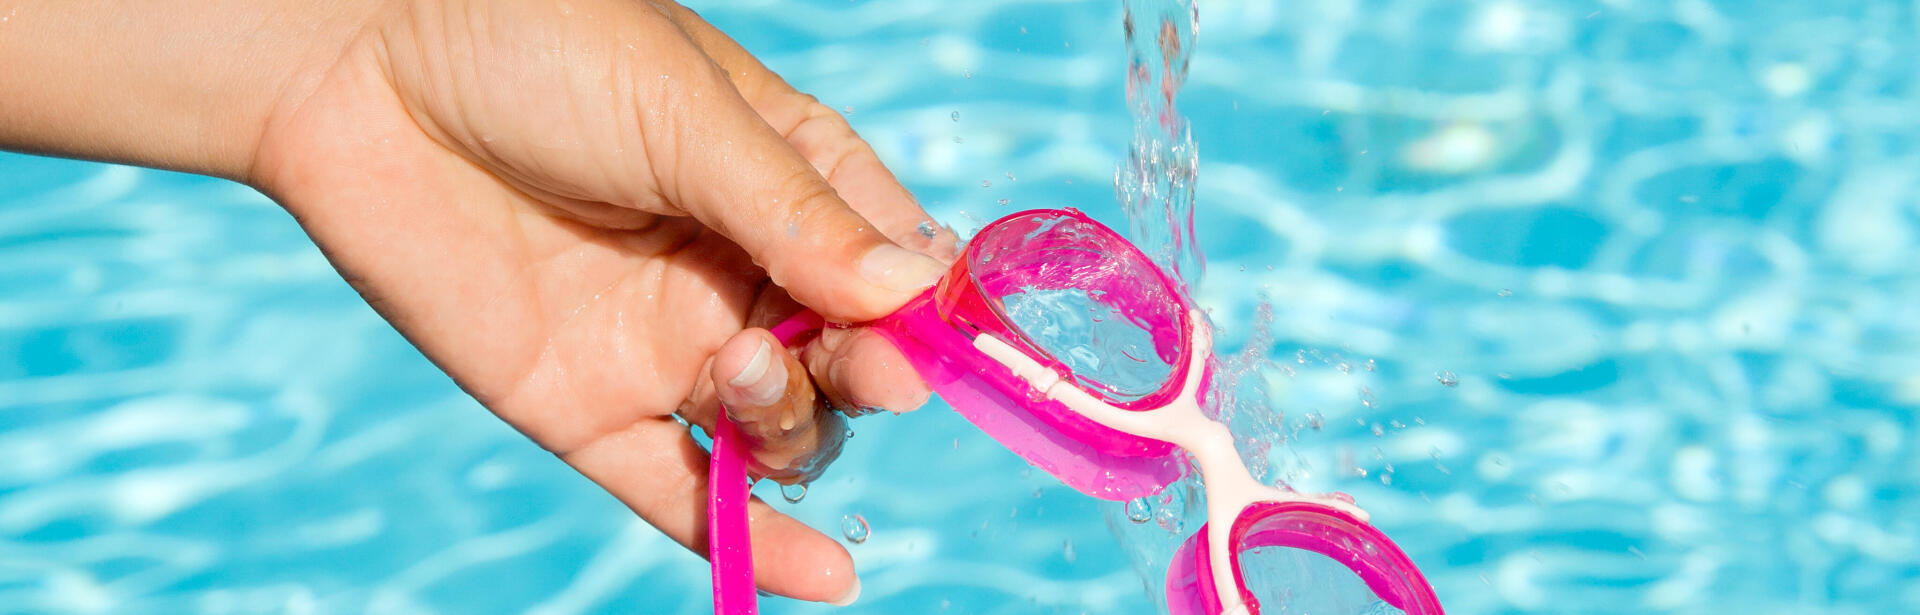 Consigli per la manutenzione pulizia attrezzature nuoto